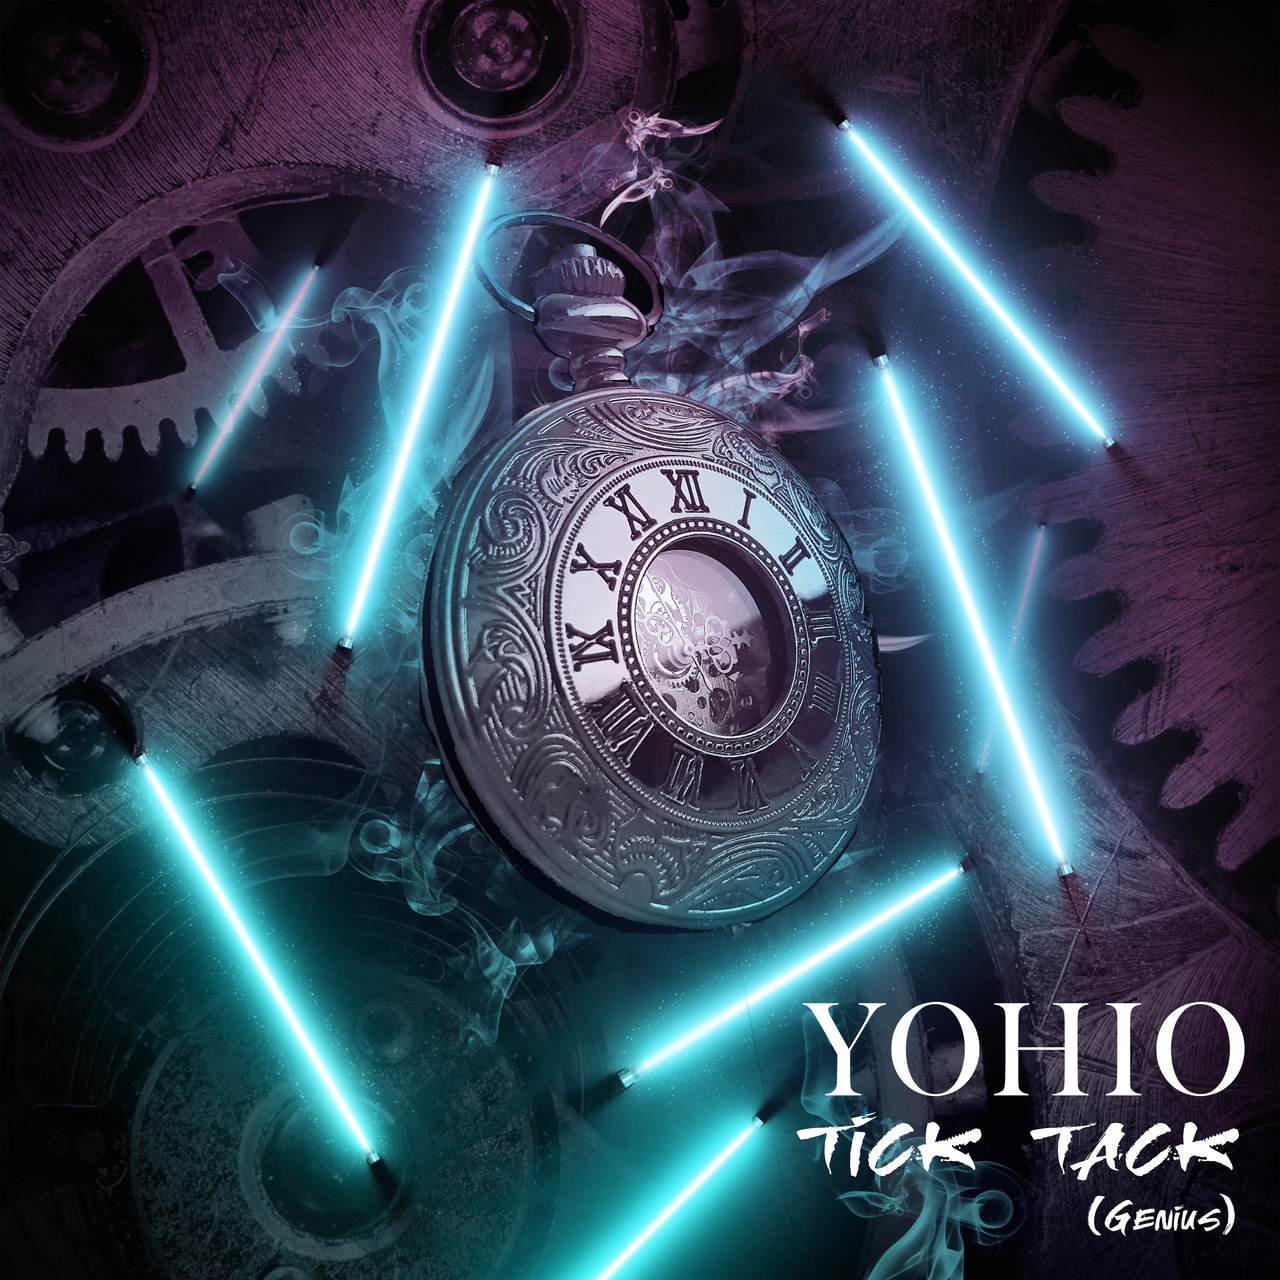 YOHIO — Tick Tack (Genius) cover artwork